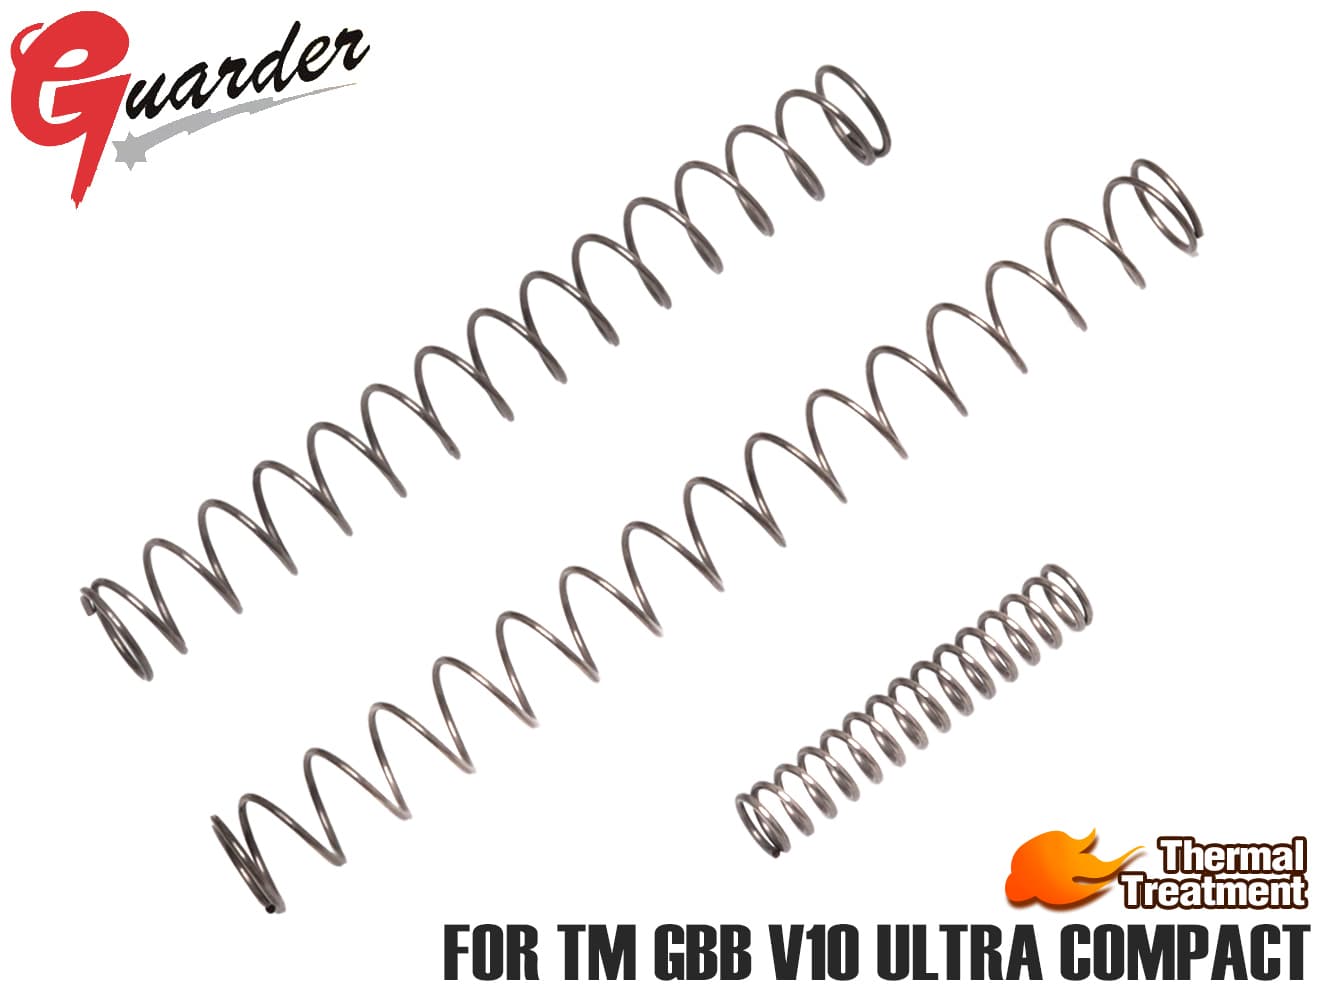 GUARDER 強化リコイルスプリング&ハンマー スプリング for マルイ V10